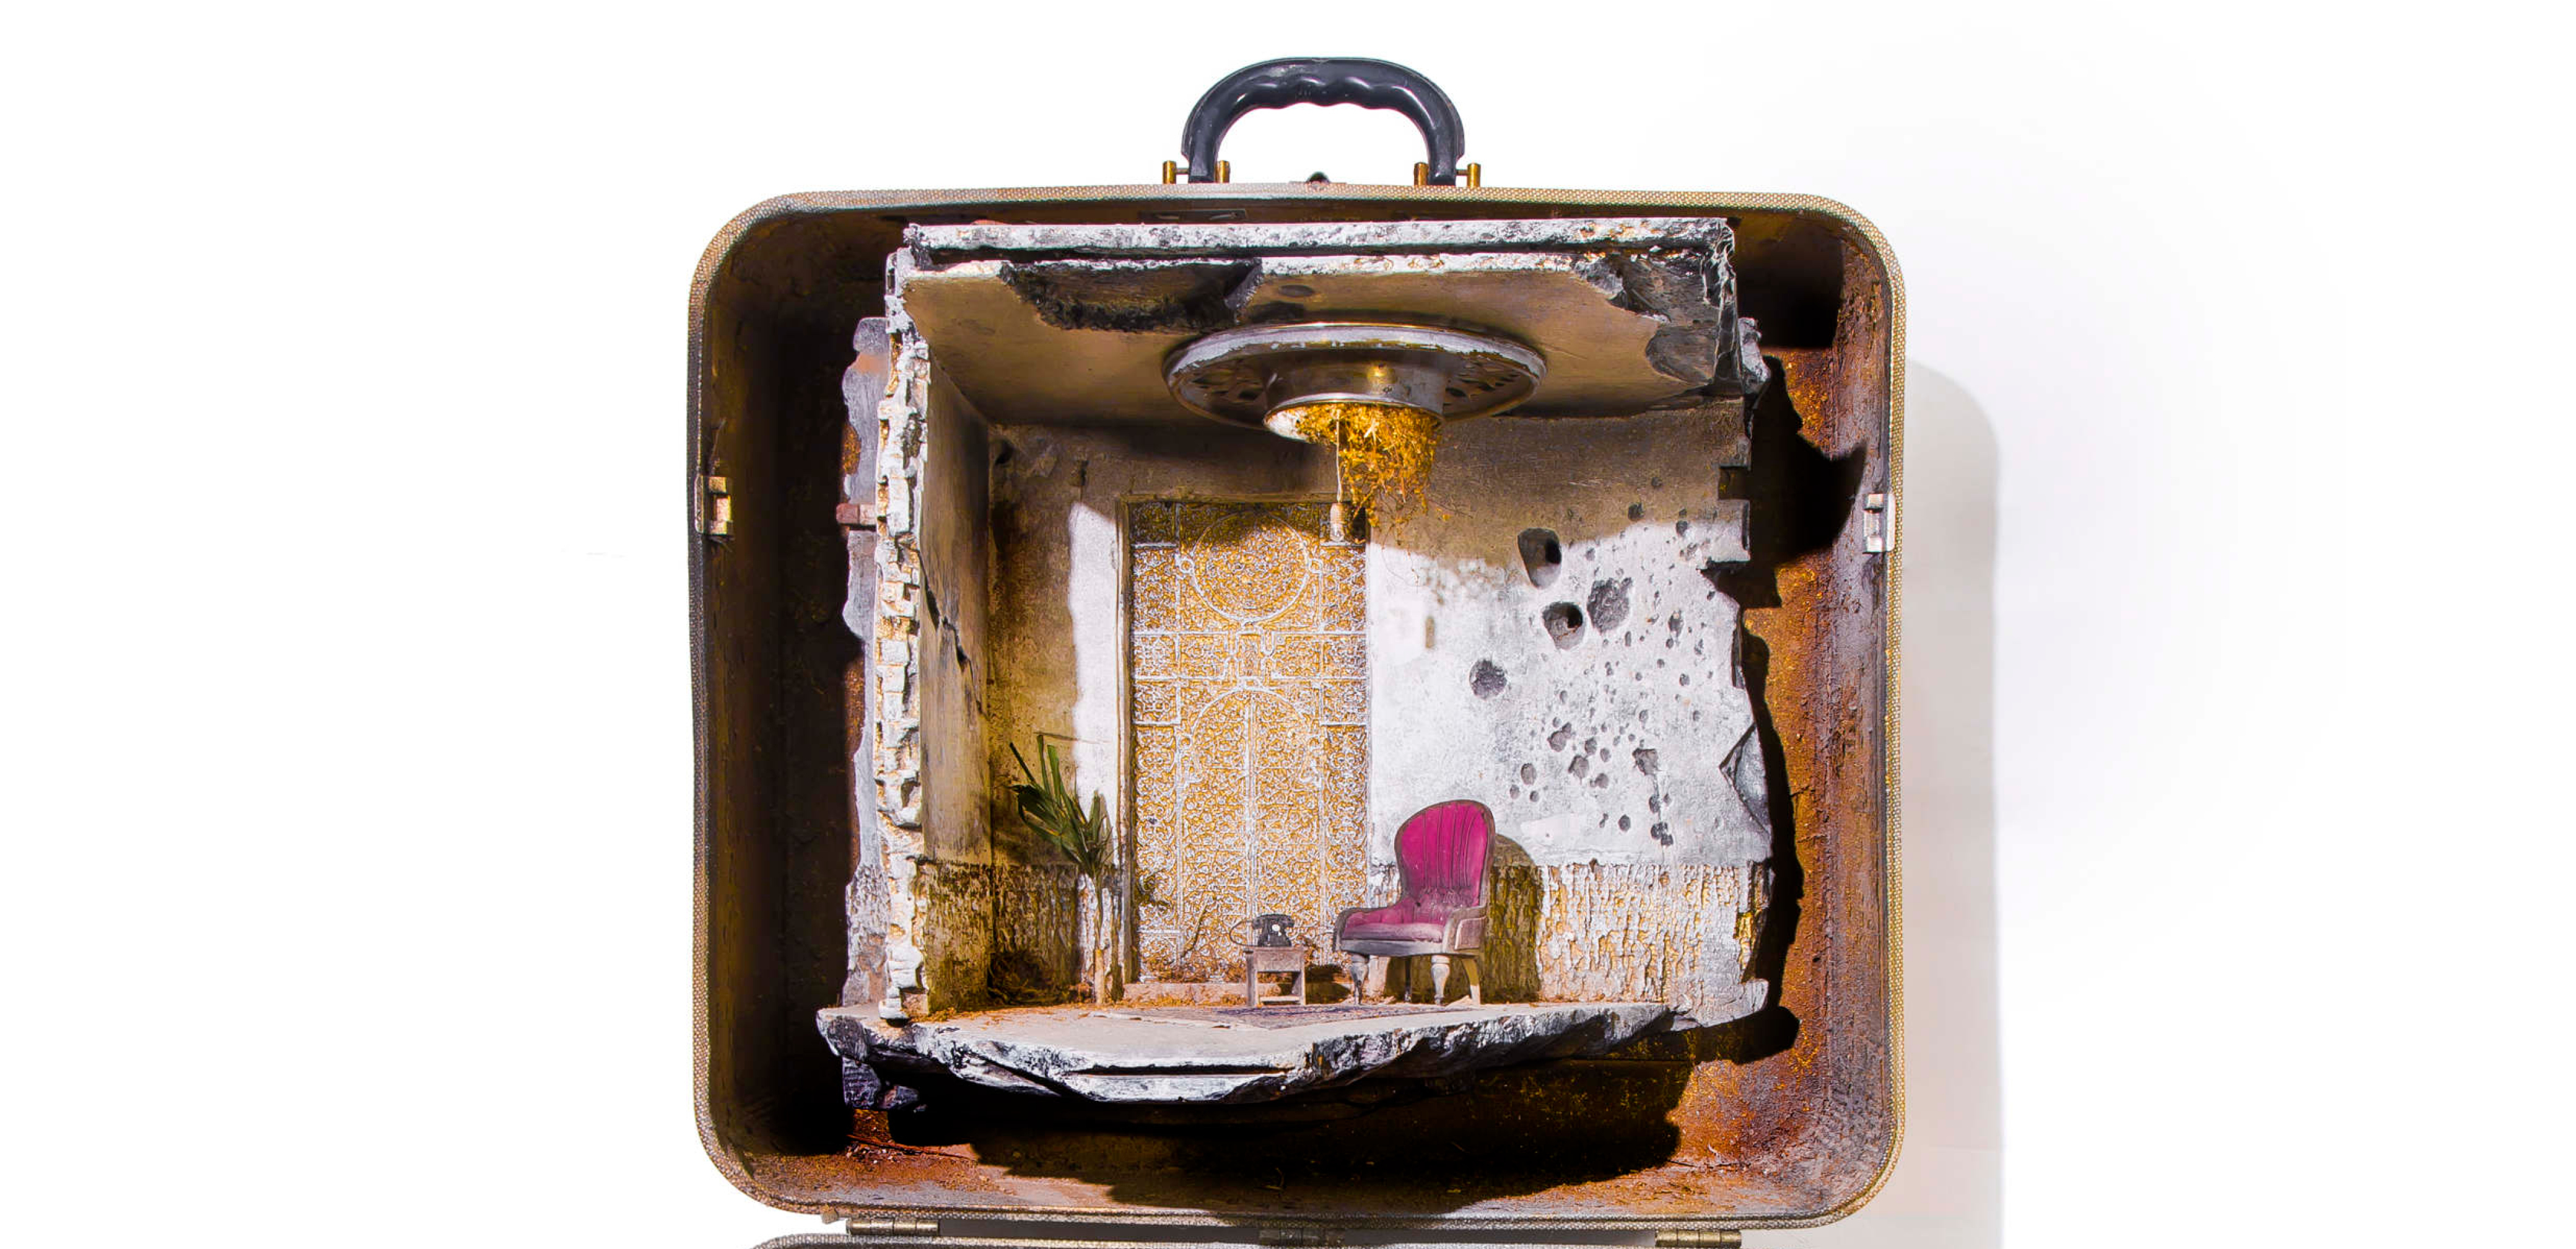 A minature diorama inside a suitcase.